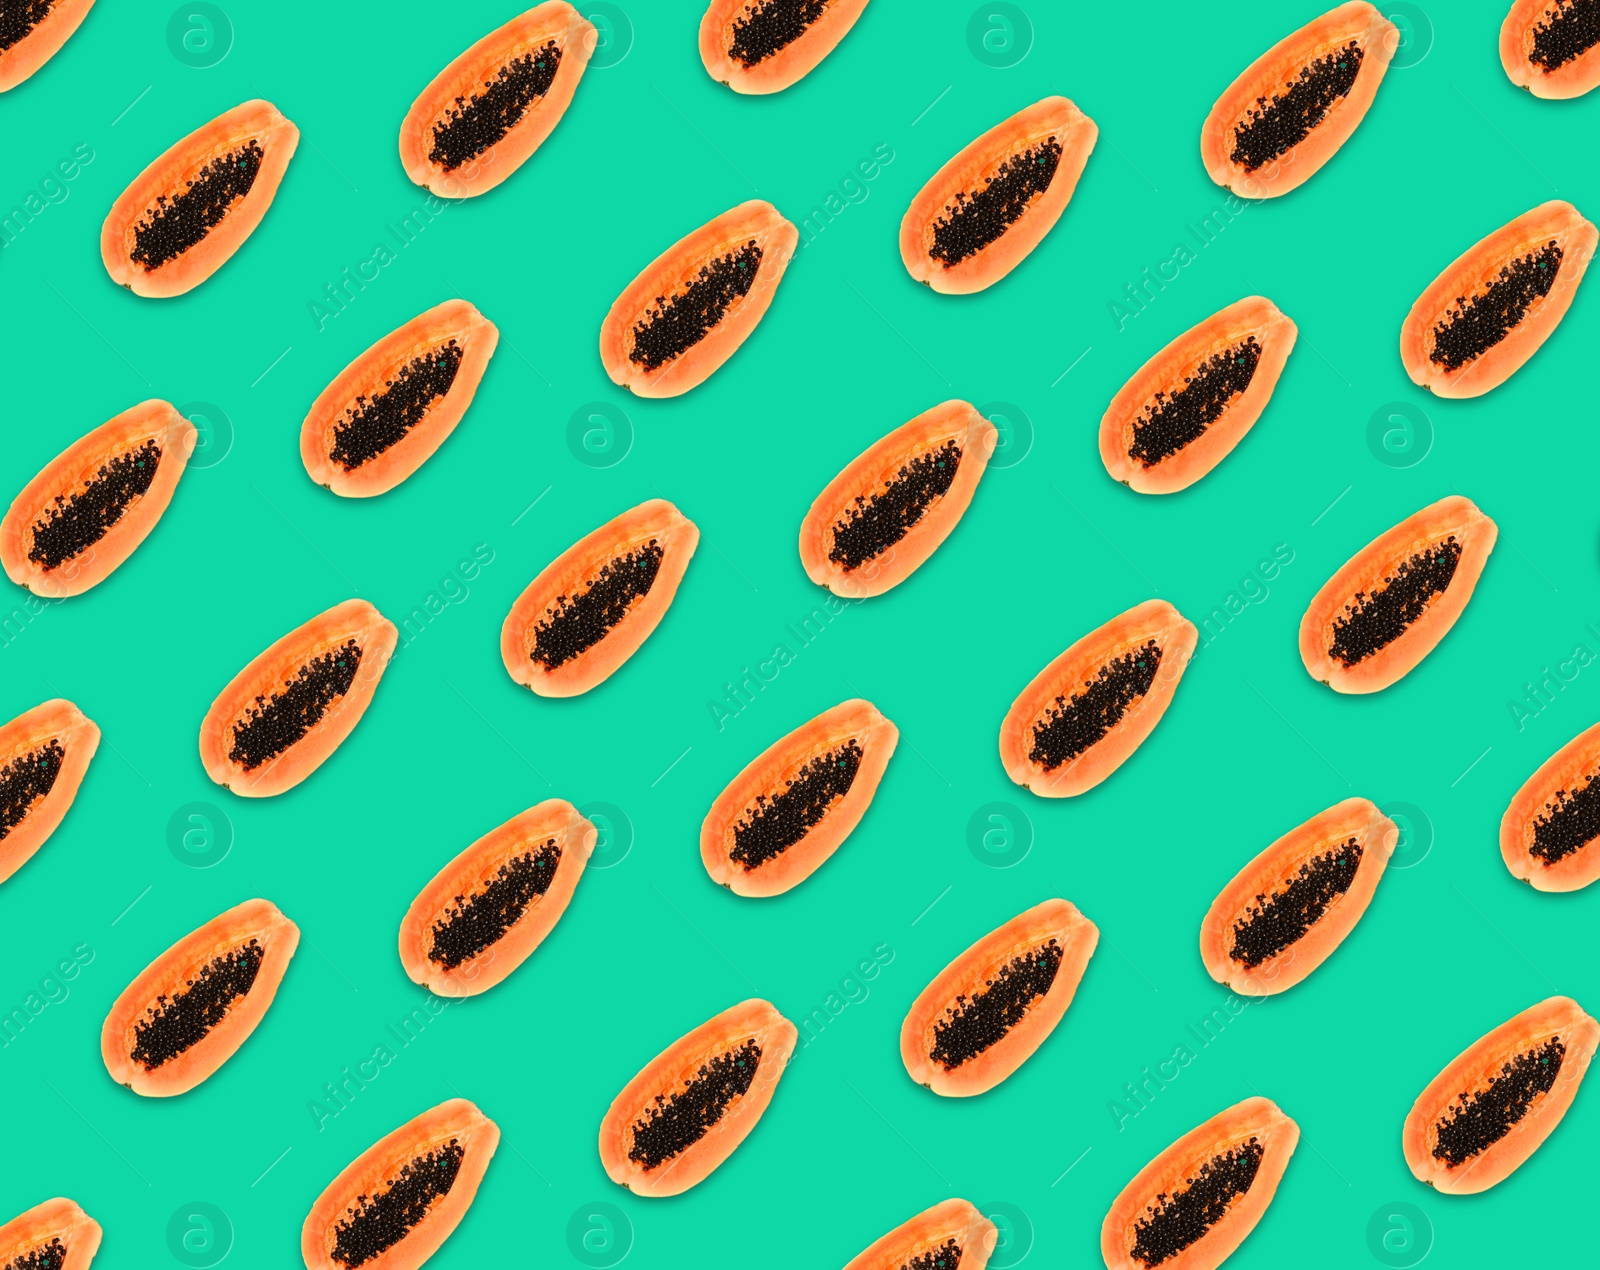 Image of Pattern of papaya halves on turquoise background